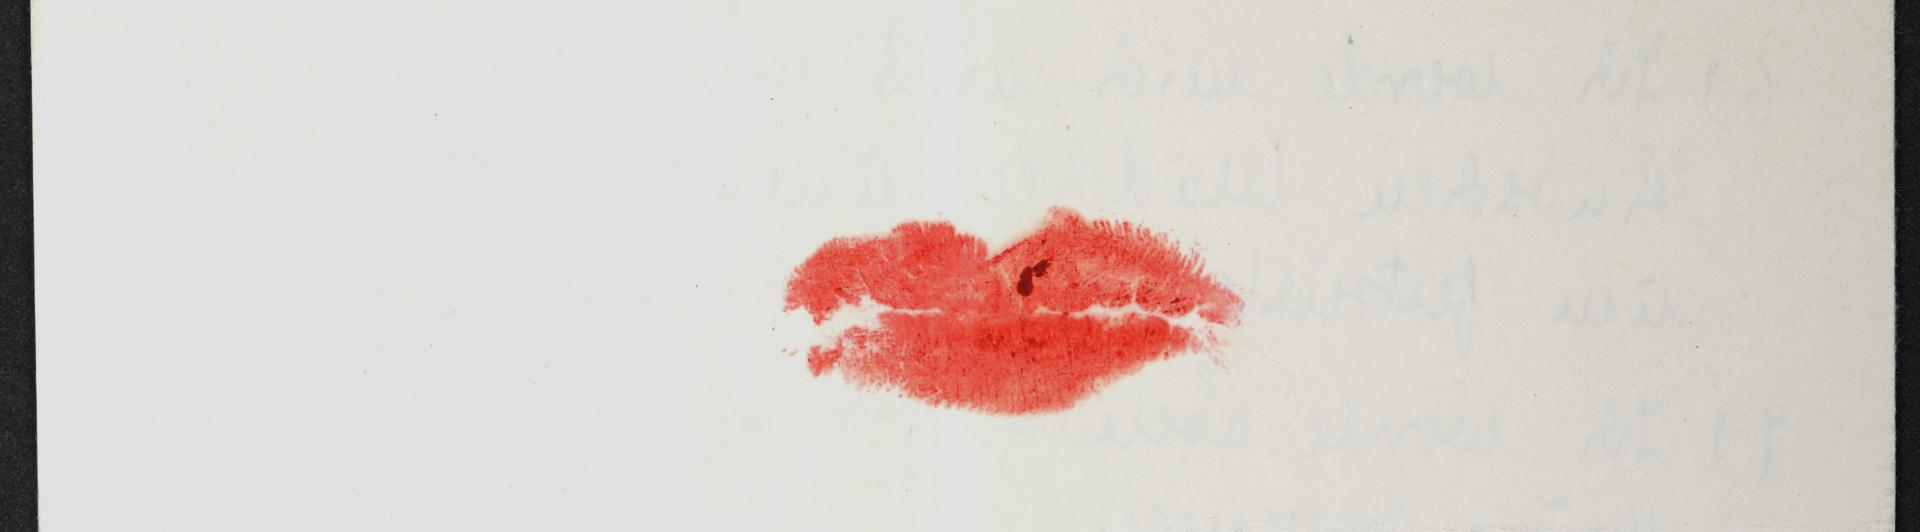 Abdruck eines Kusses mit rotem Lippenstift.